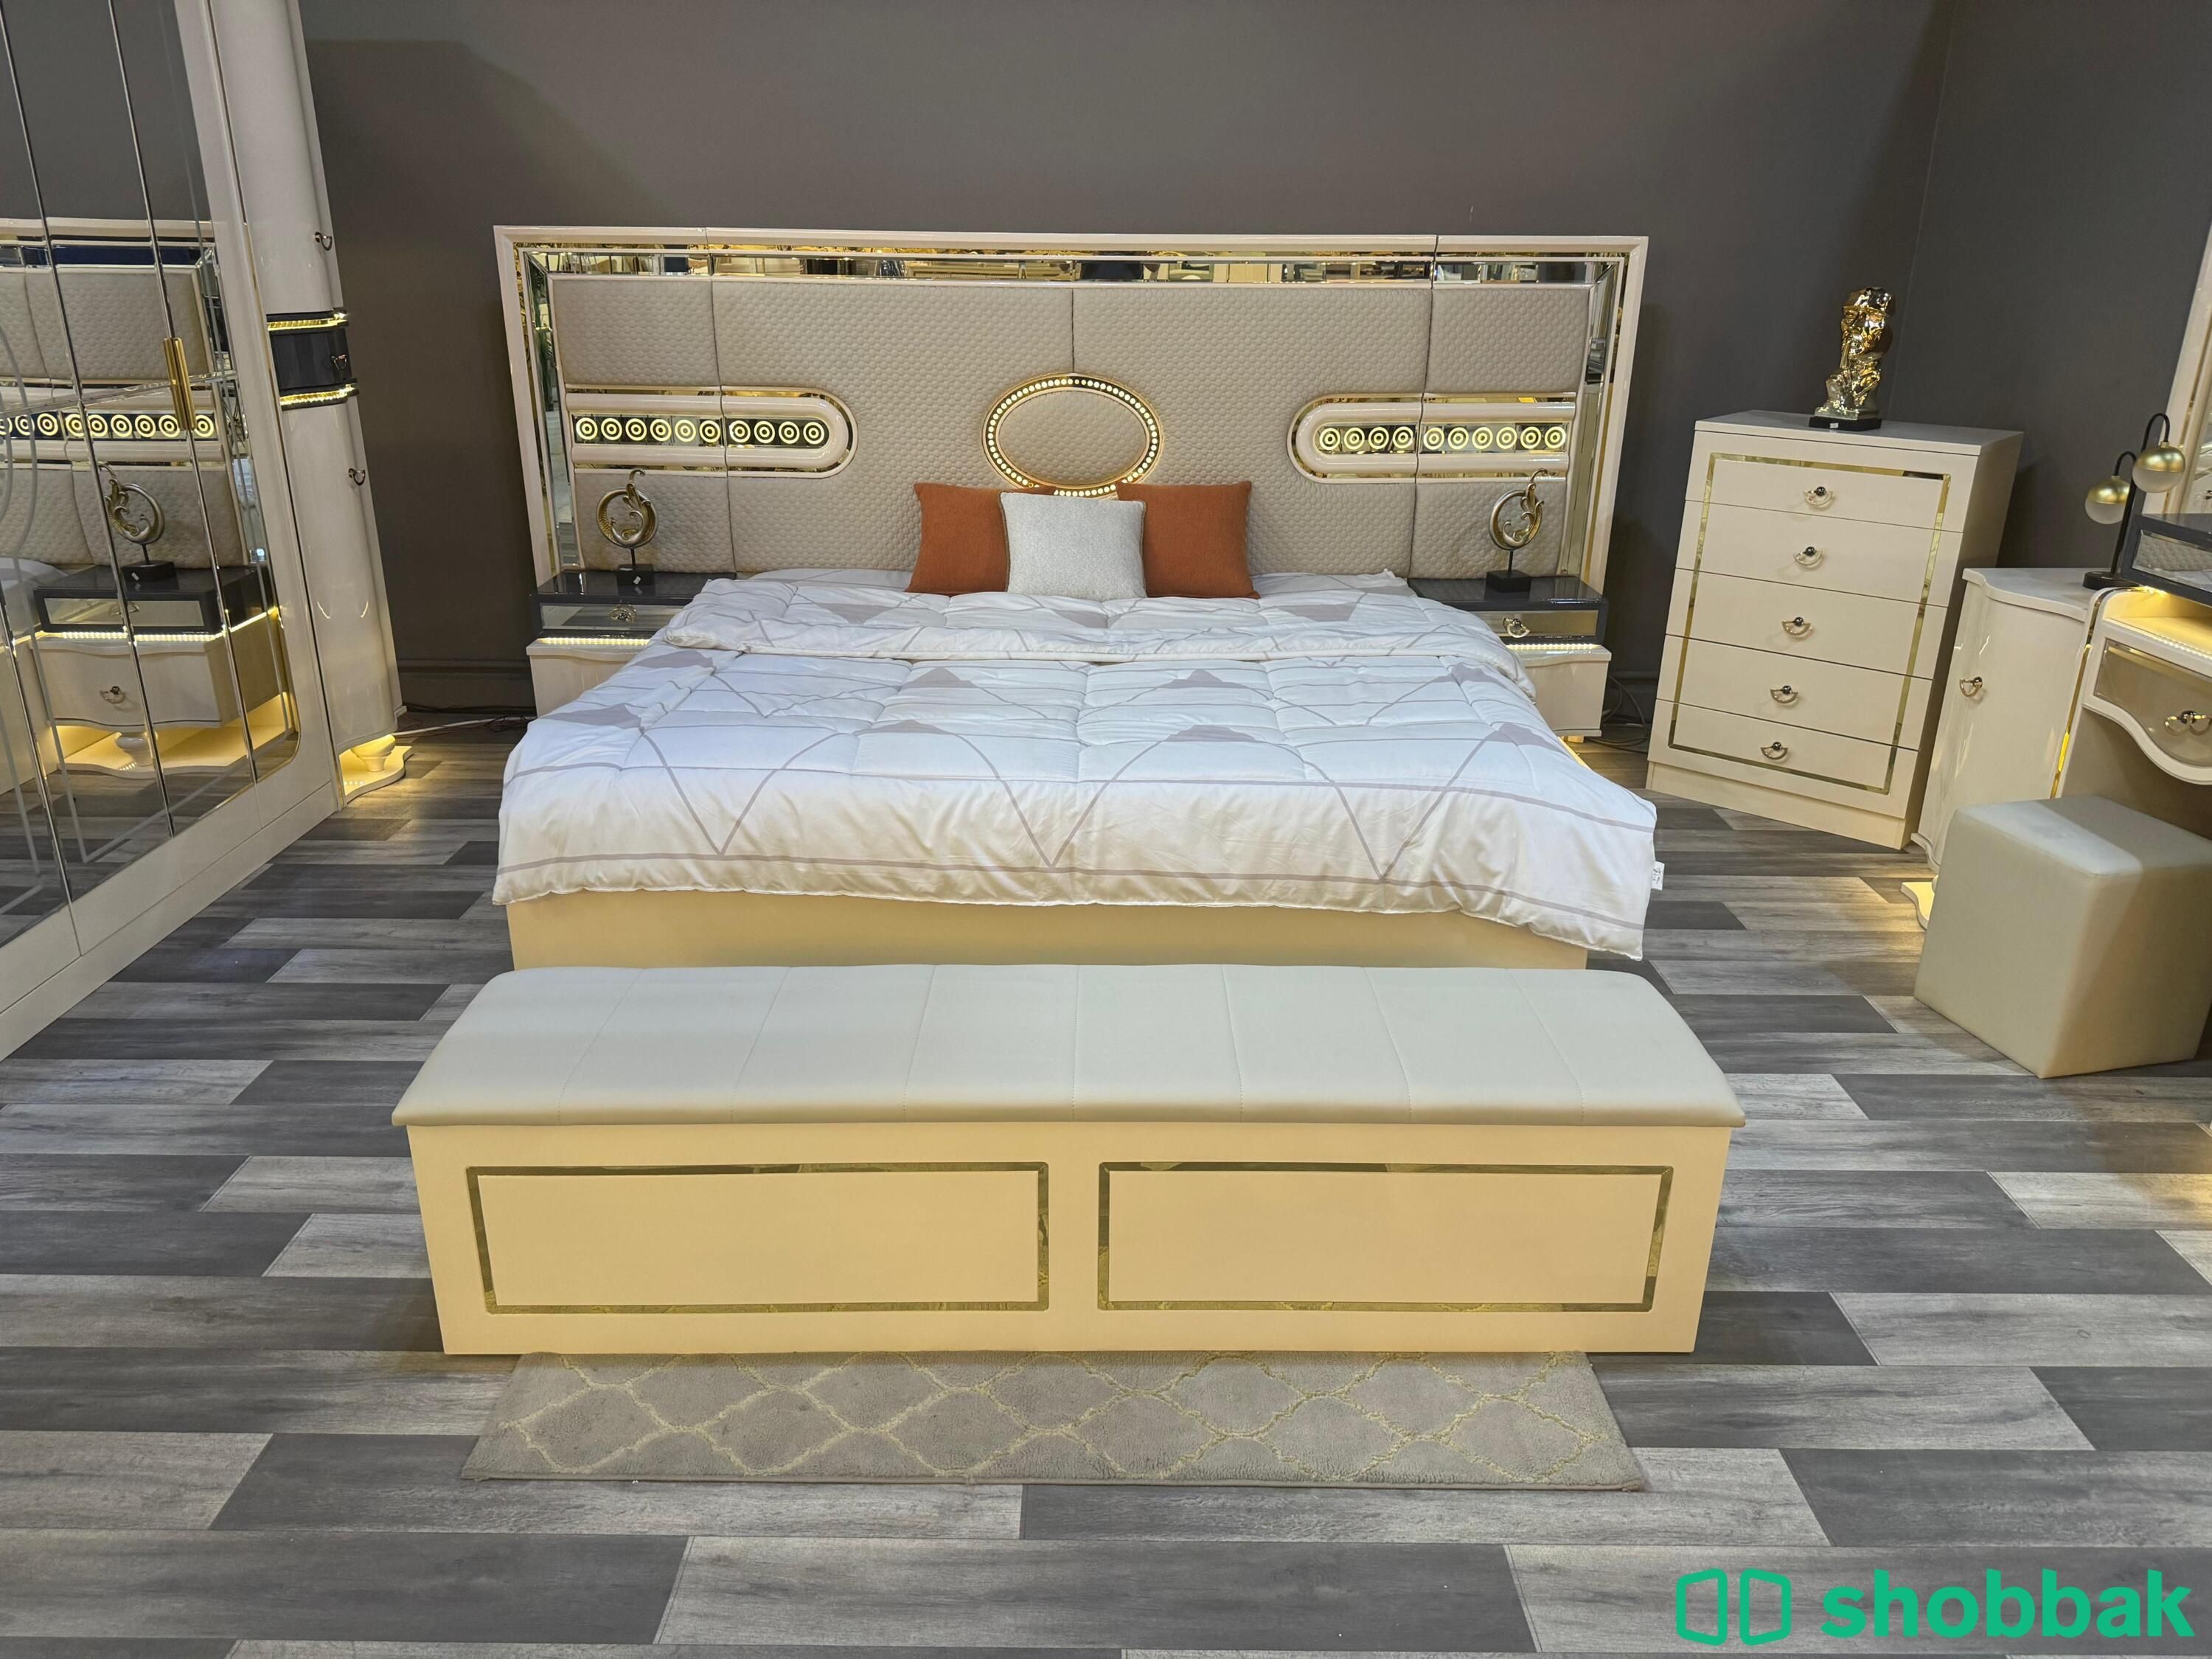 غرفة نوم جديدة بتصميم مميز Shobbak Saudi Arabia